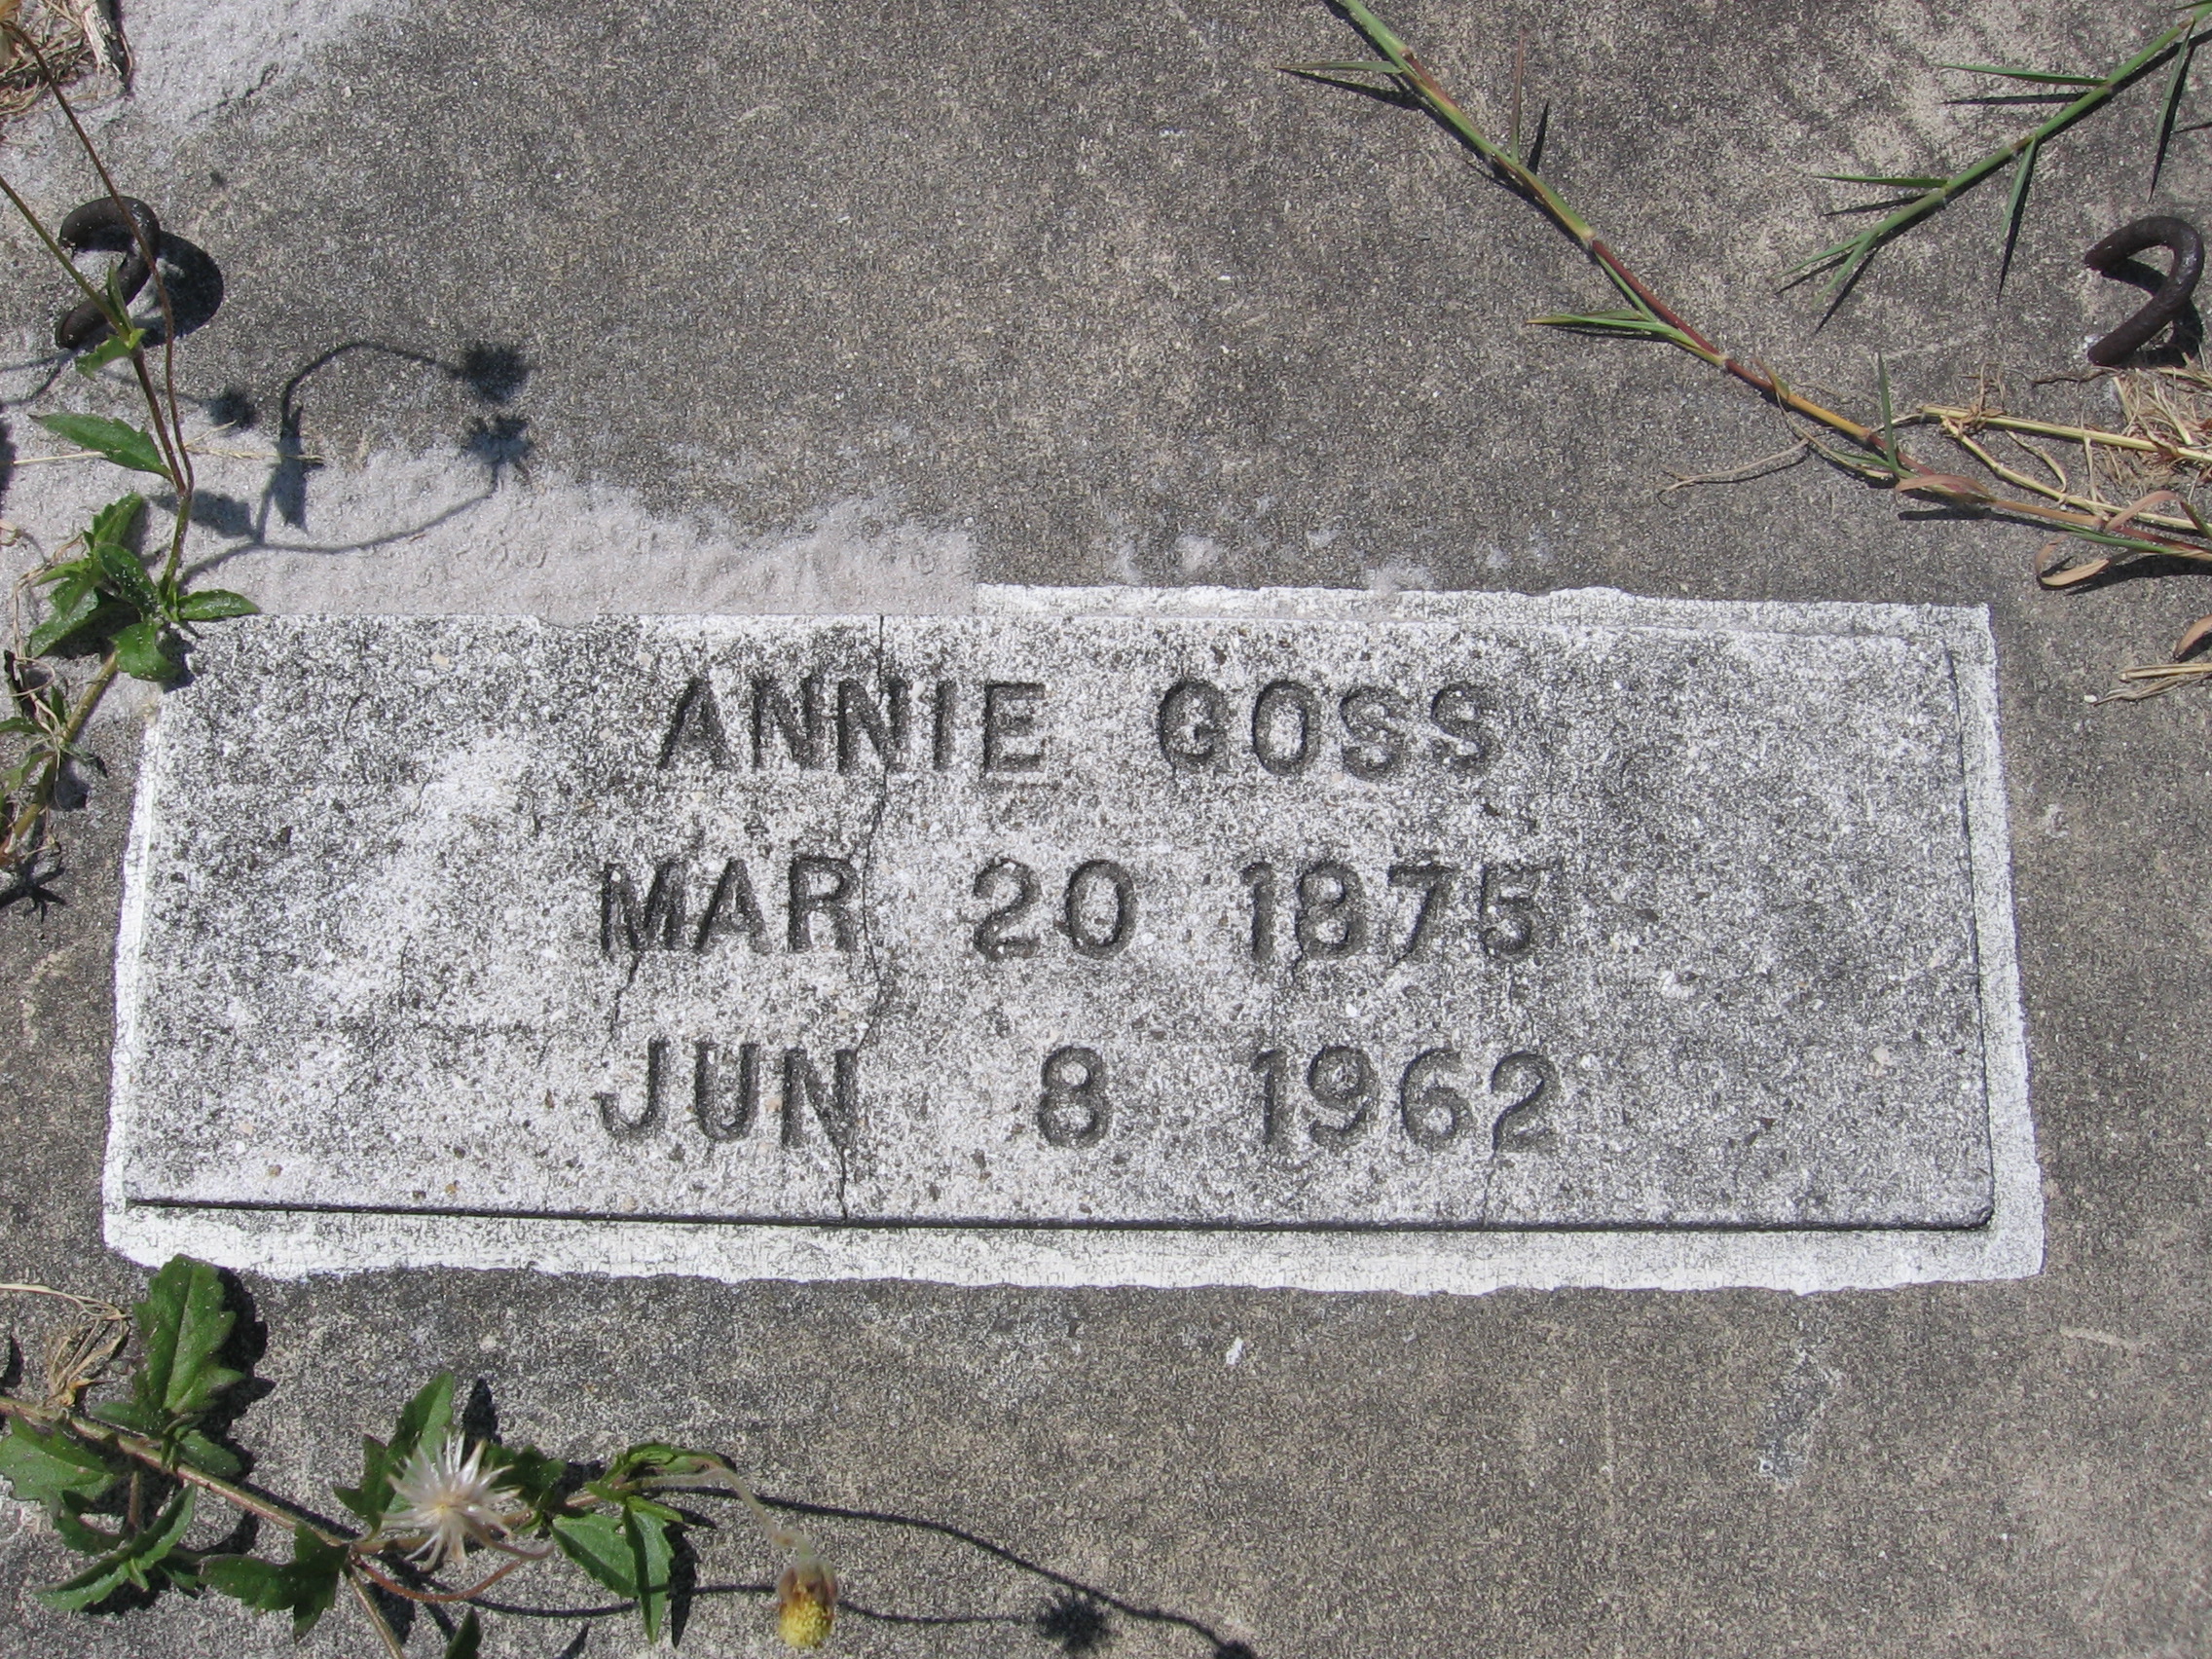 Annie Goss